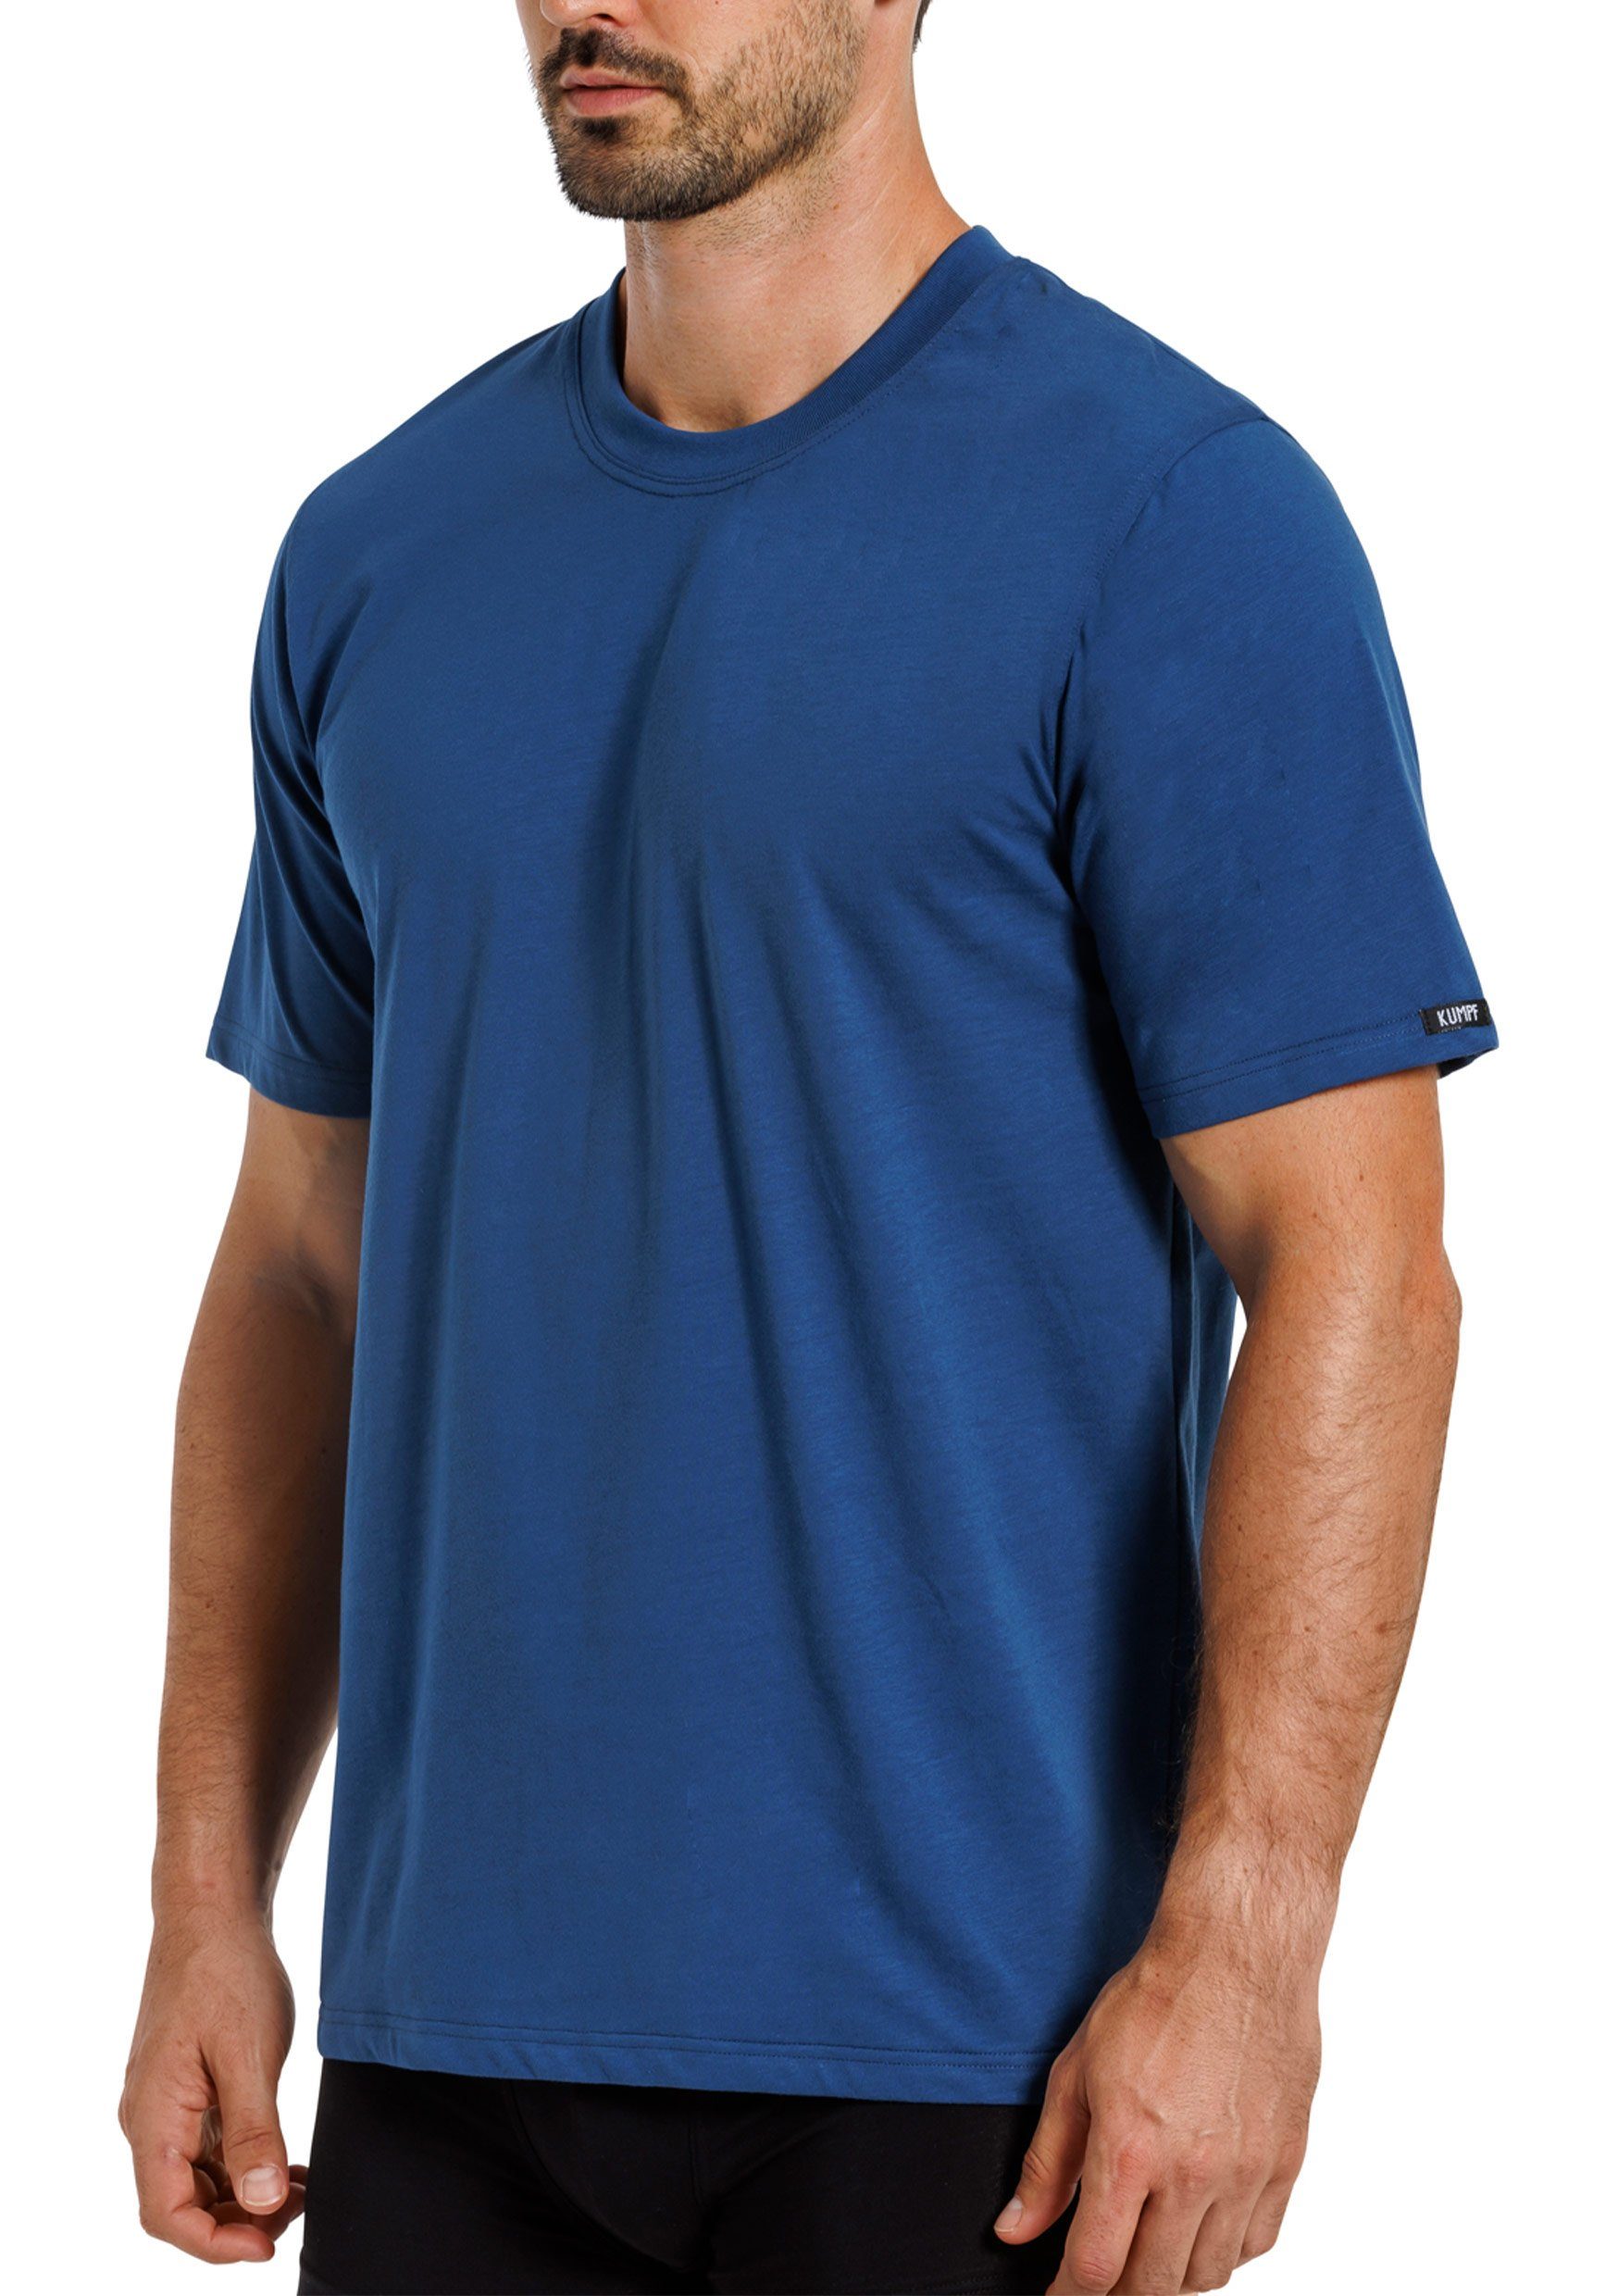 Markenqualität Bio 2-St) T-Shirt KUMPF Unterziehshirt Sparpack Cotton darkblue schwarz (Spar-Set, Herren hohe 2er